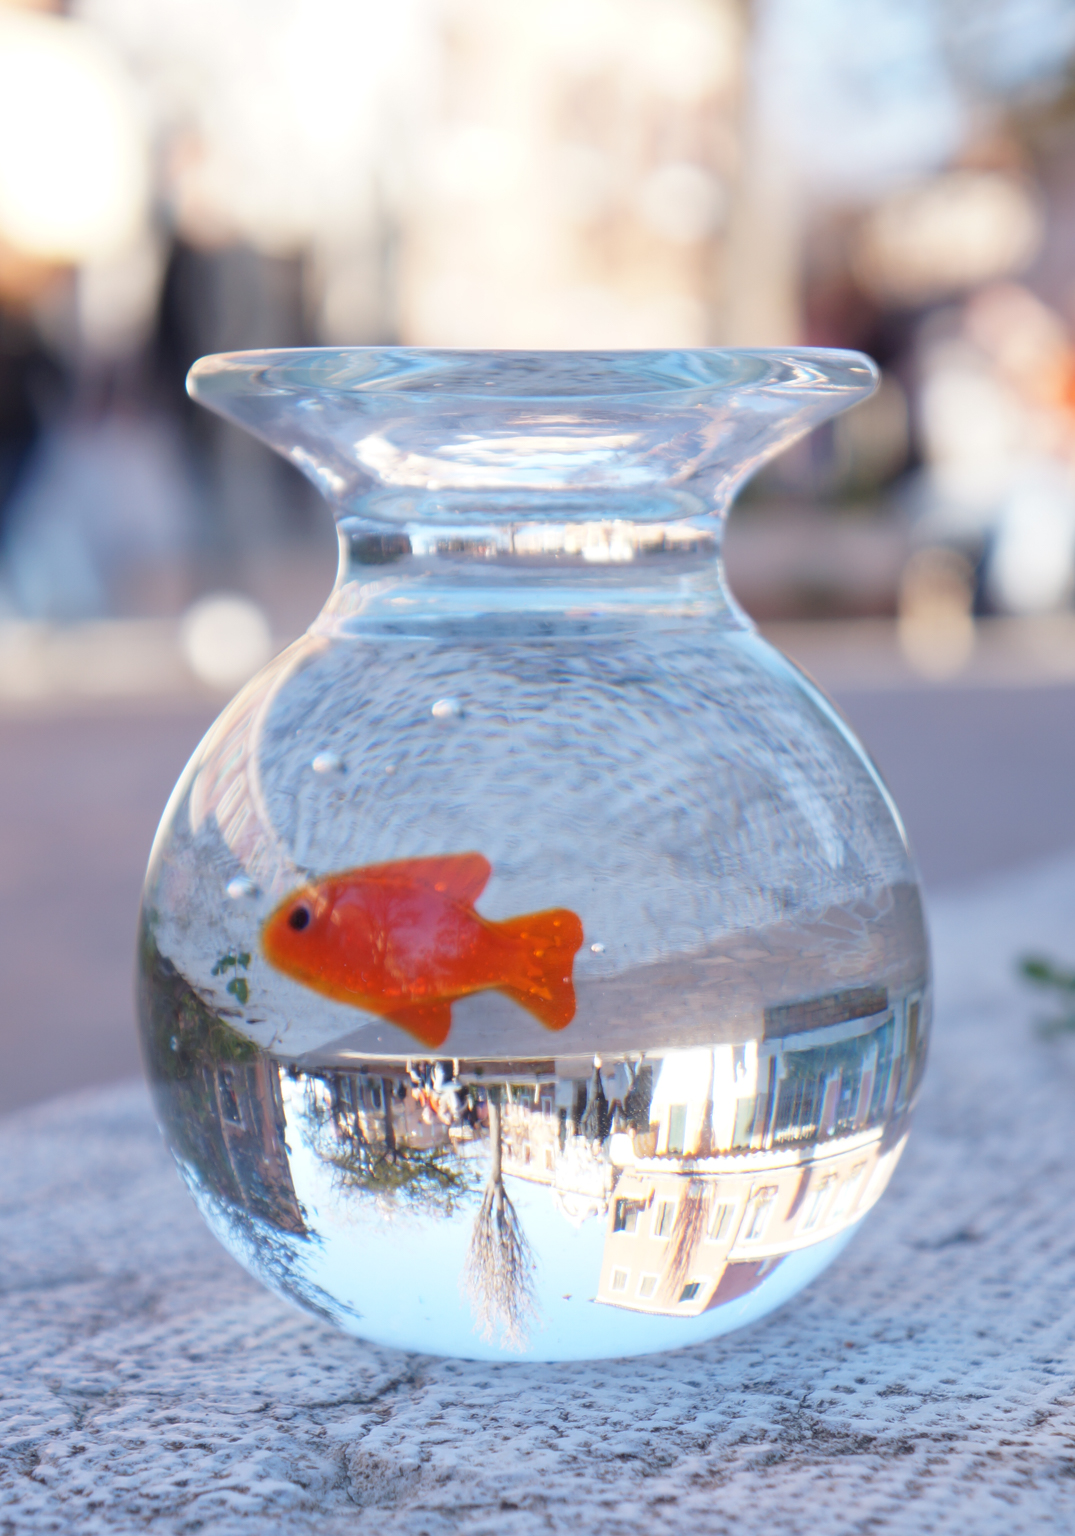 Boccia per pesci in vetro, pesce rosso, vaso per acquario con pesci rossi,  classica statuetta in vetro di Murano in miniatura realizzata a Venezia.  Guarda le mie statuette e sculture. 